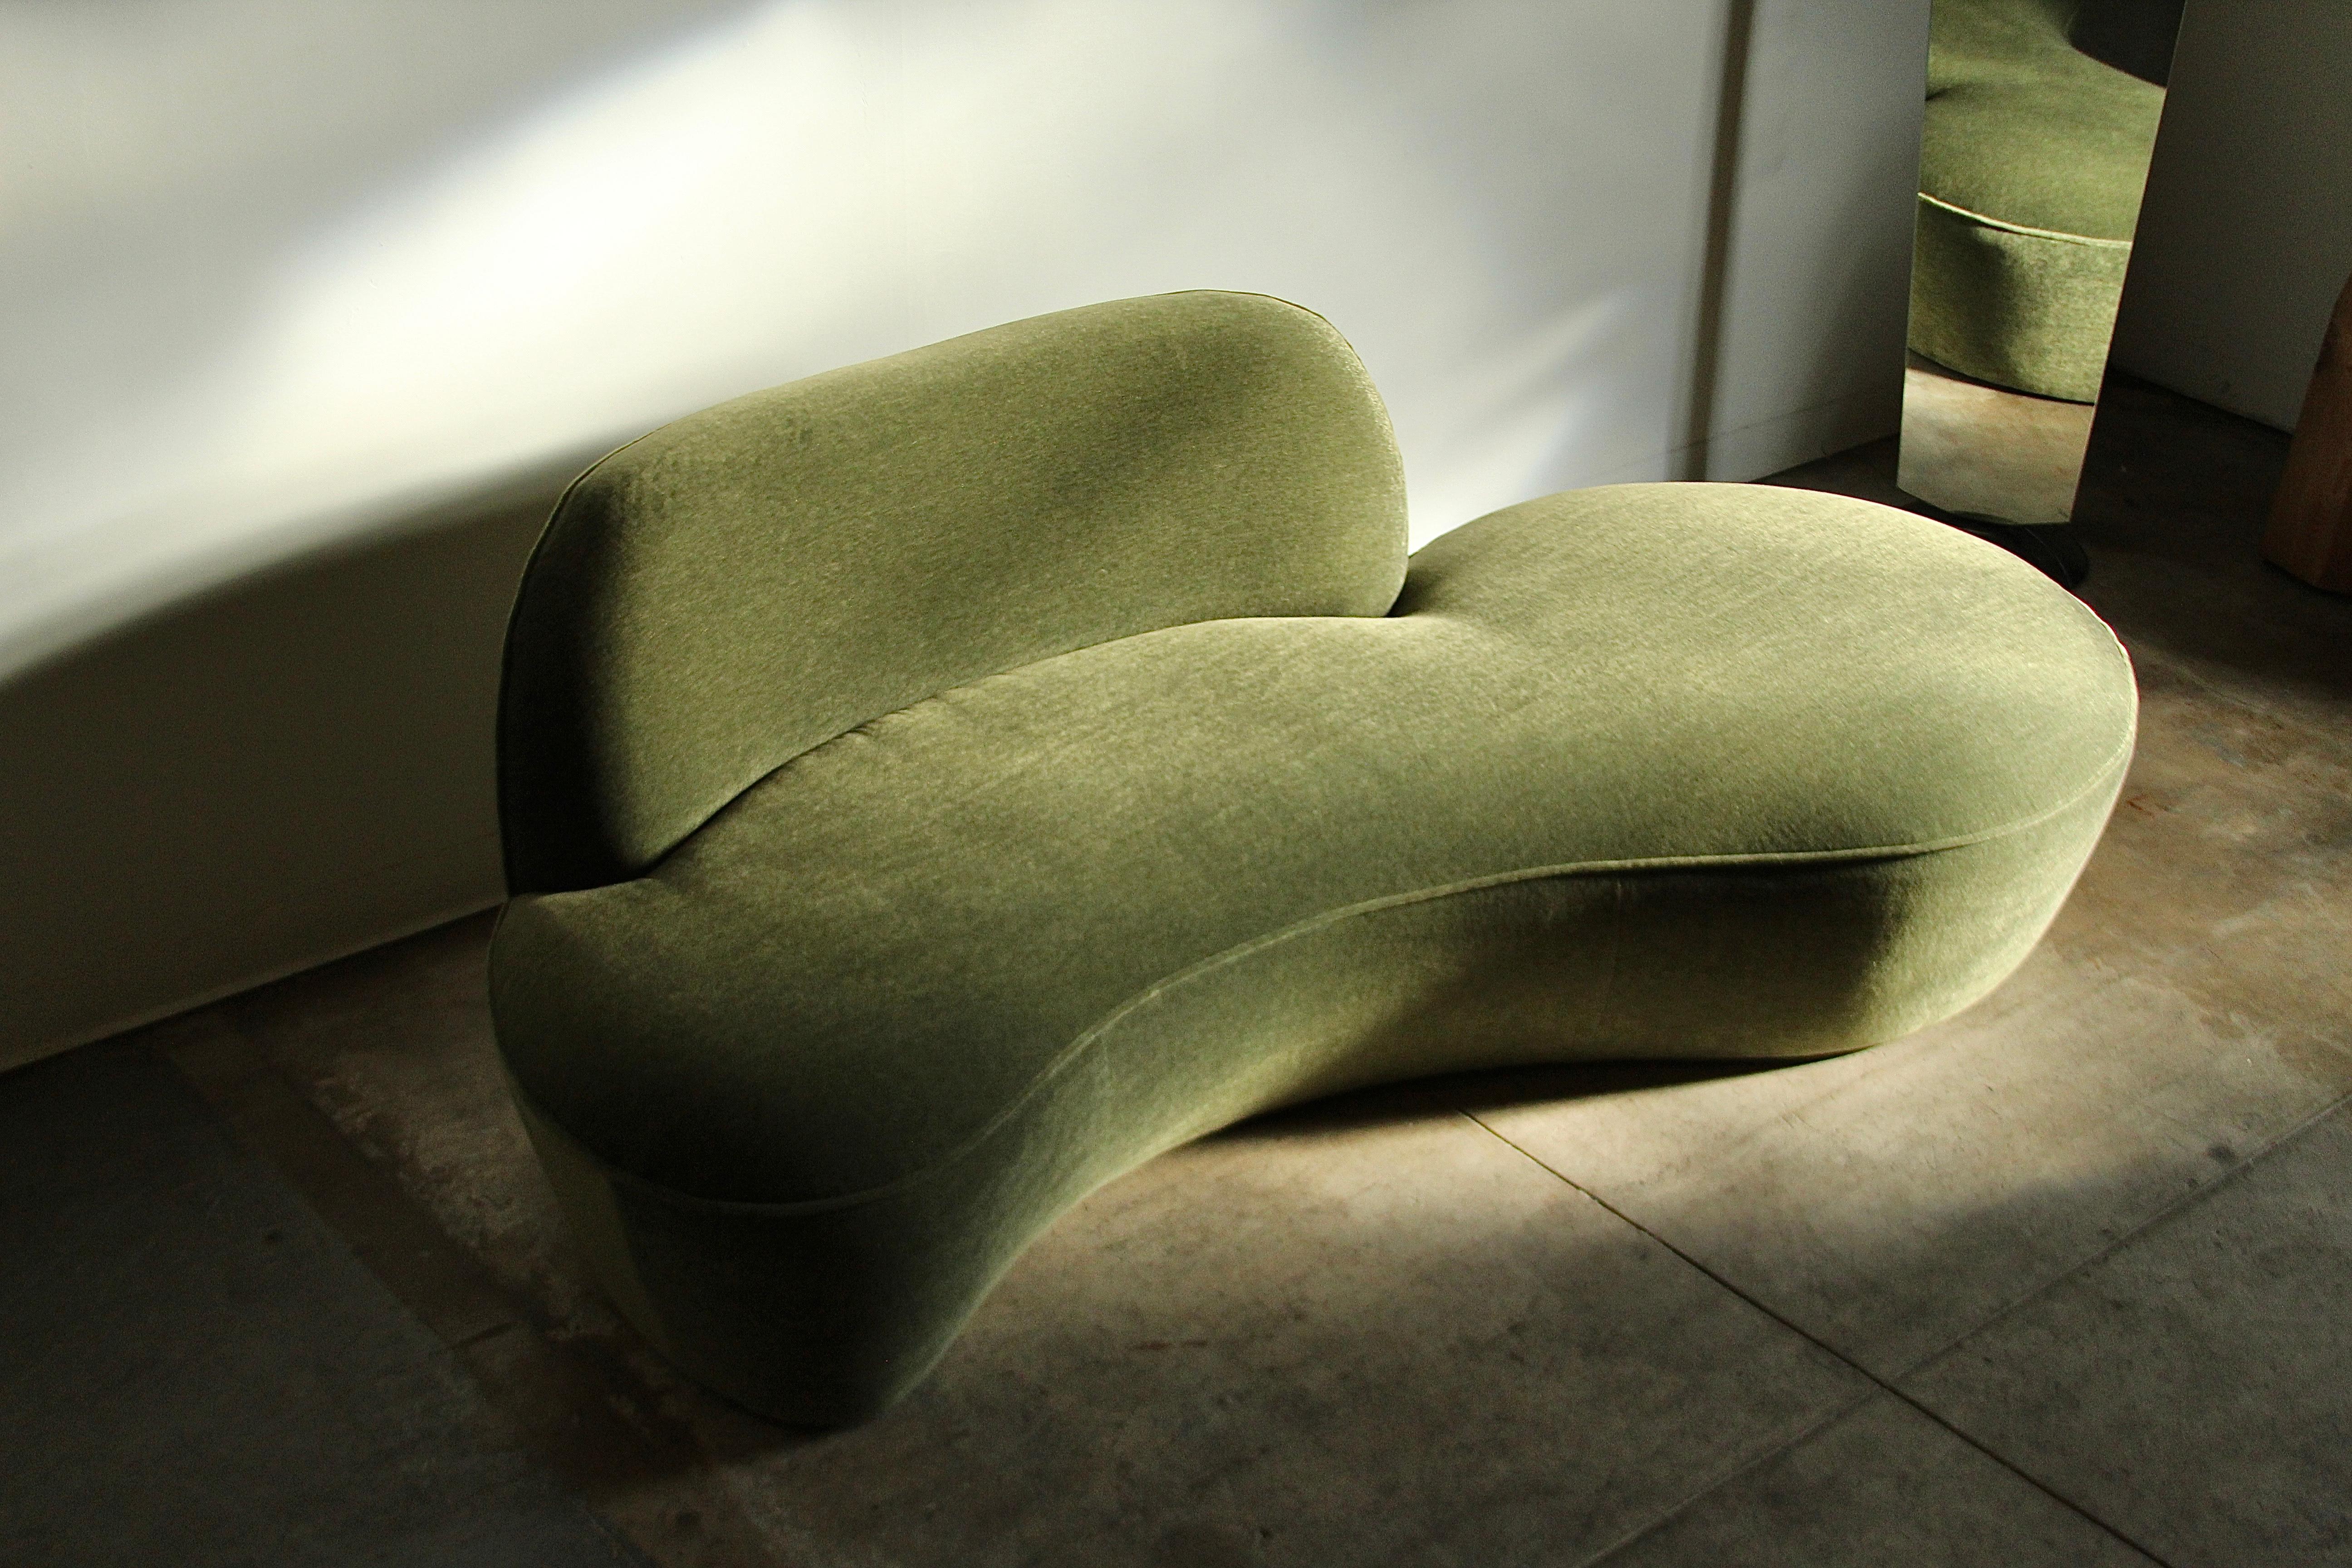 Ein atemberaubendes Serpentine-Sofa von Vladimir Kagan für American Leather, ca. 2000er Jahre. Dieses Stück wurde meisterhaft mit einem prächtigen moosgrünen Mohair neu gepolstert. Mit seiner geschwungenen Form und der warmen, einladenden Polsterung